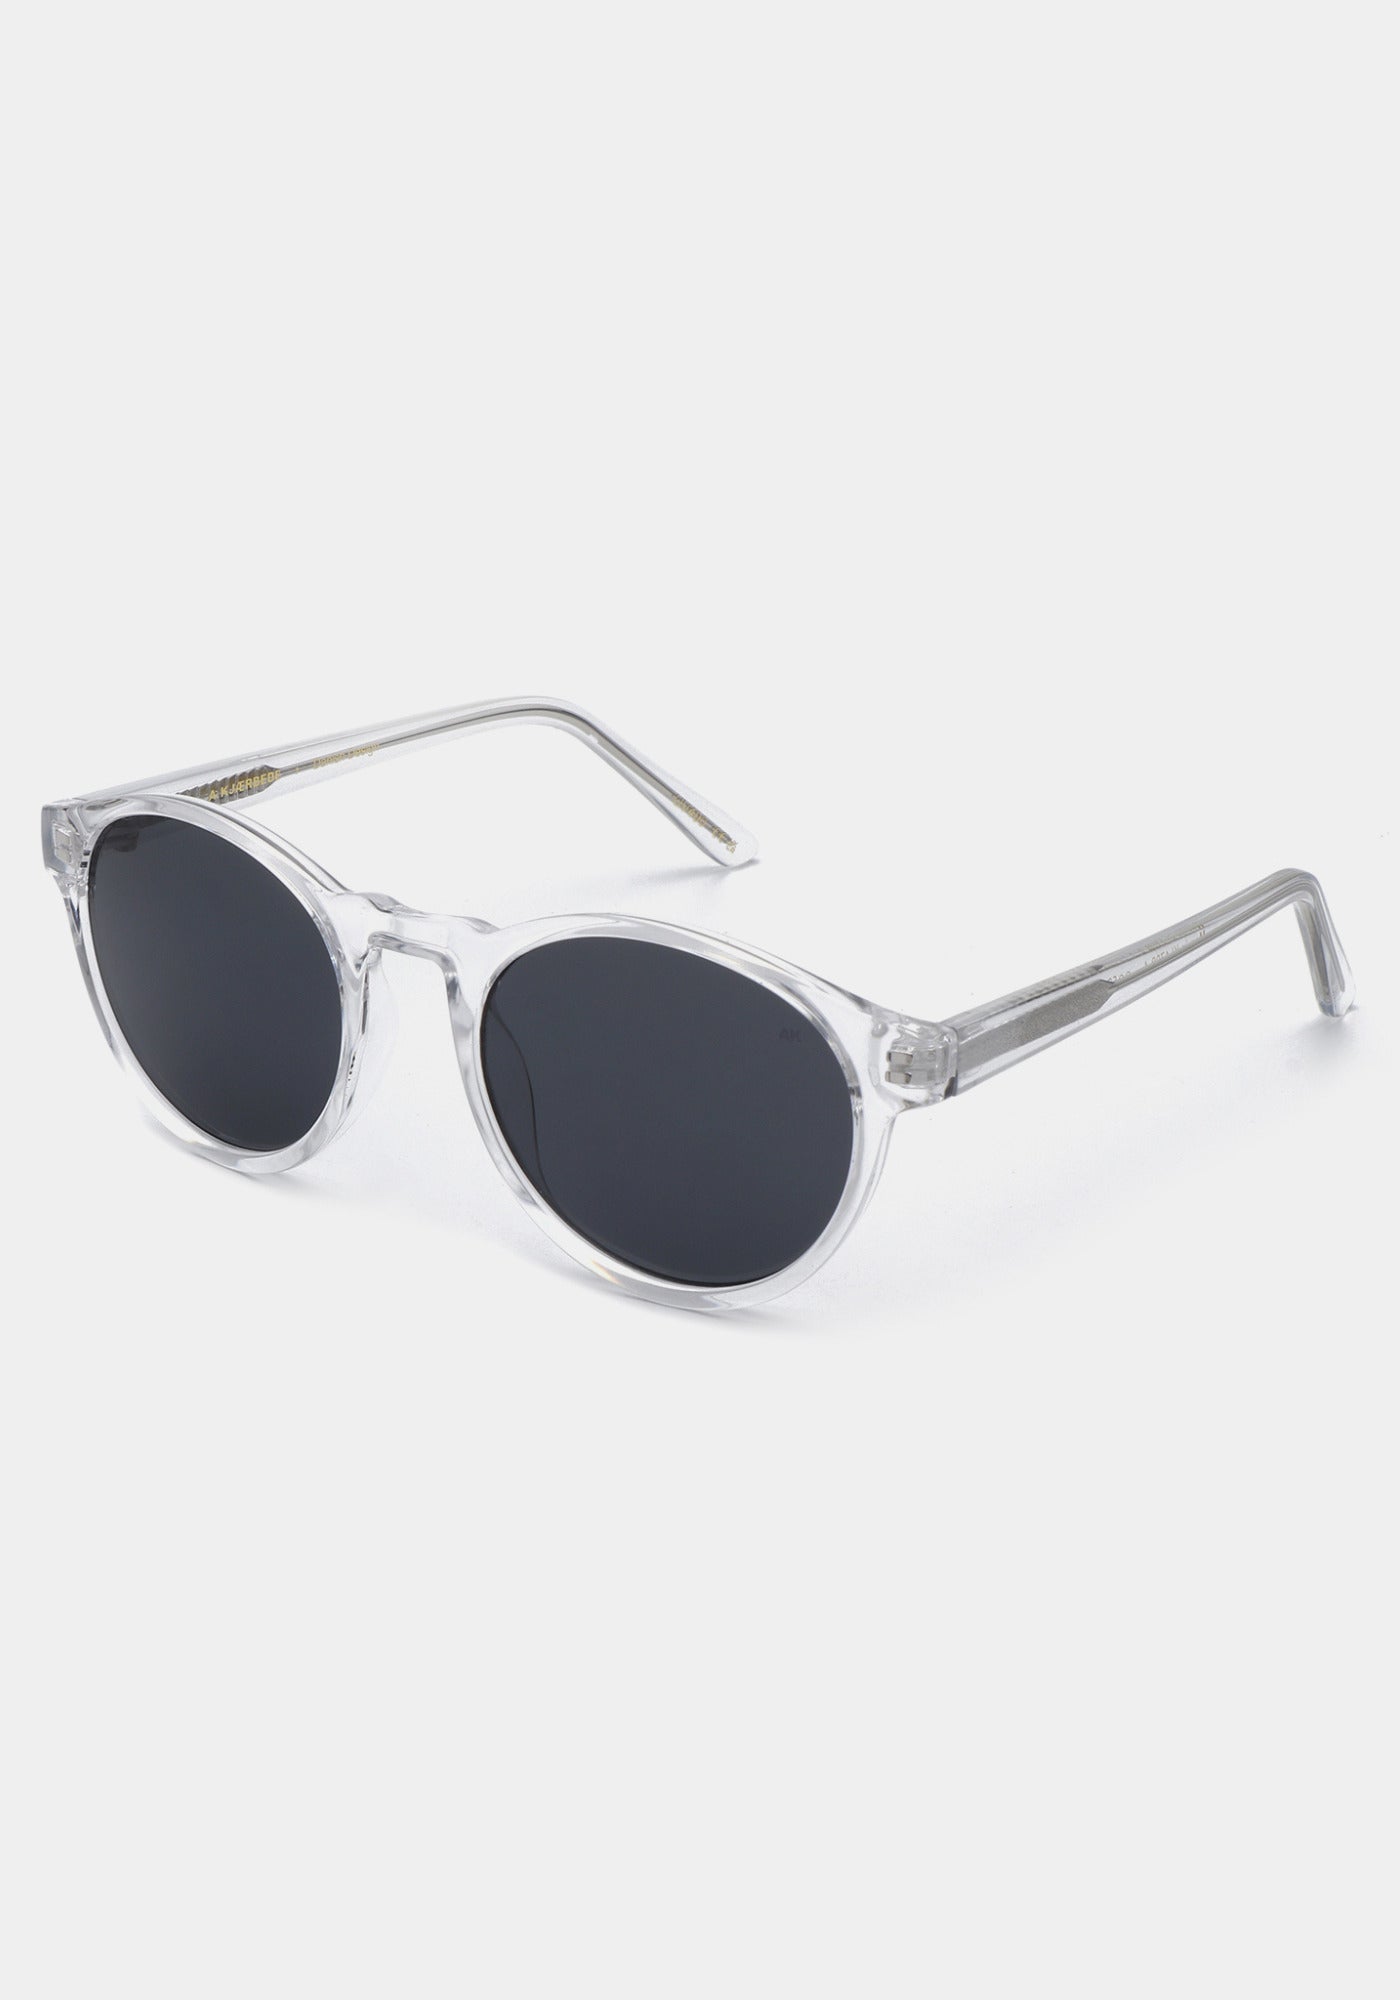 Les lunettes de soleil Marvin crystal de chez A.Kjaerbede